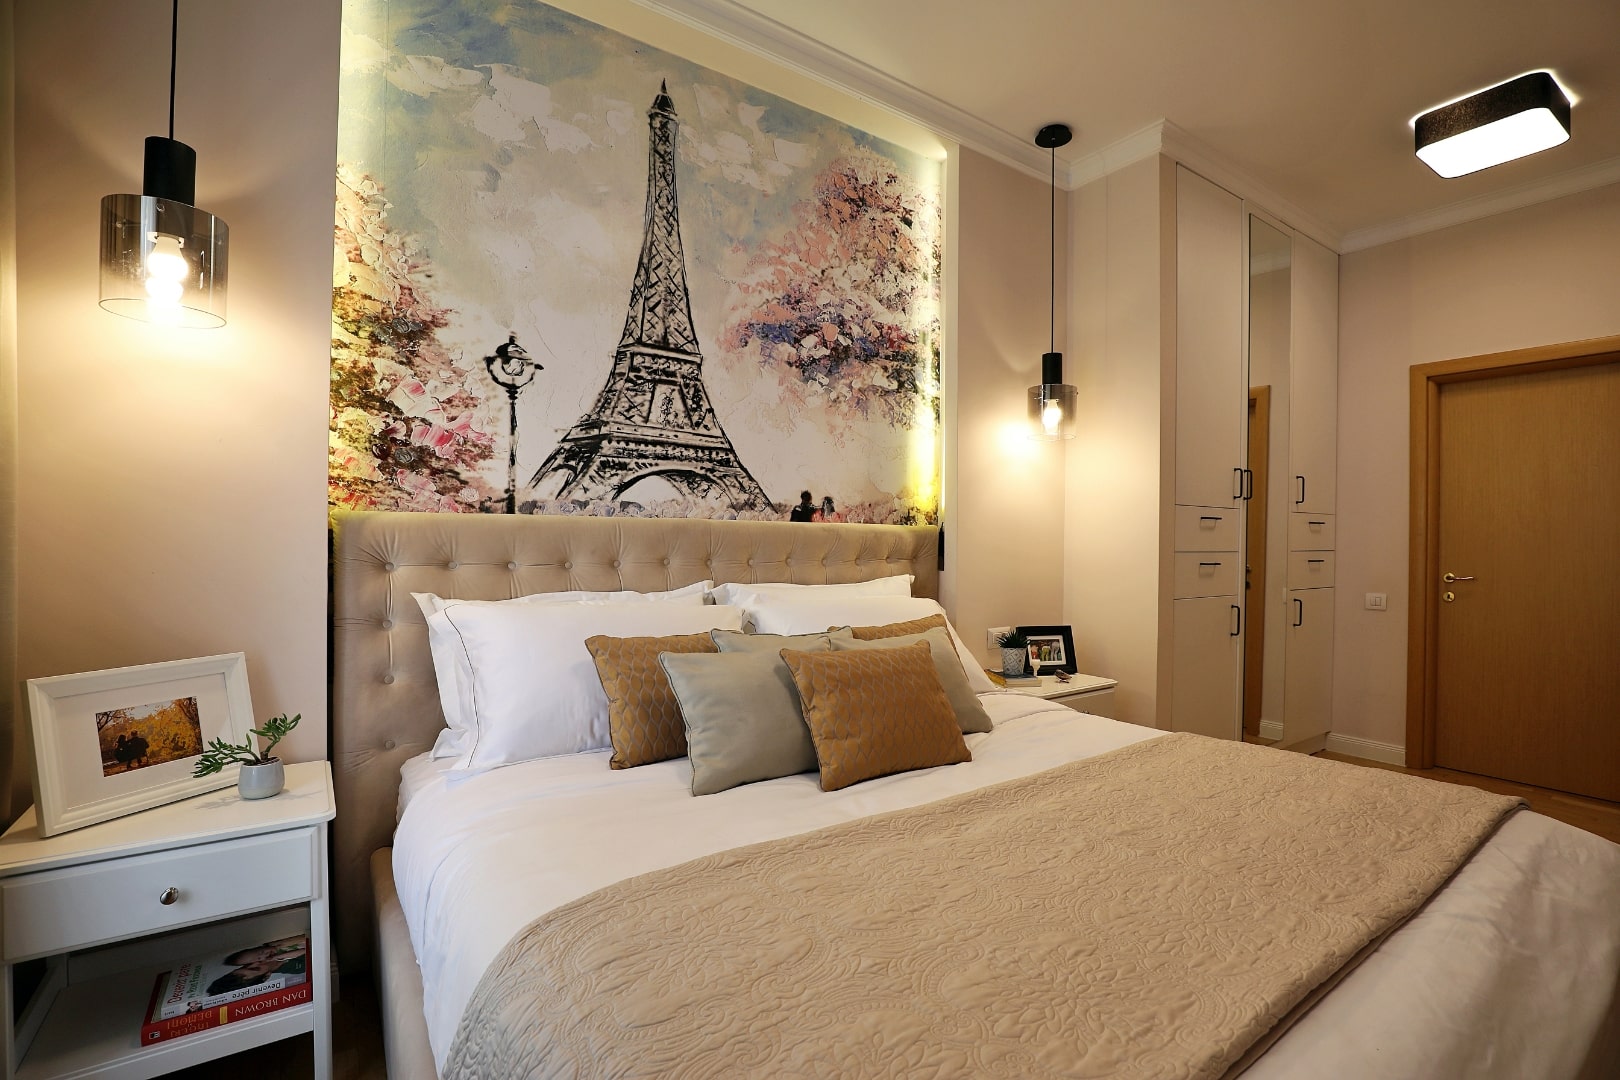 Design interior pentru un dormitor cu un tapet care reprezinta o imagine cu turnul eiffel.